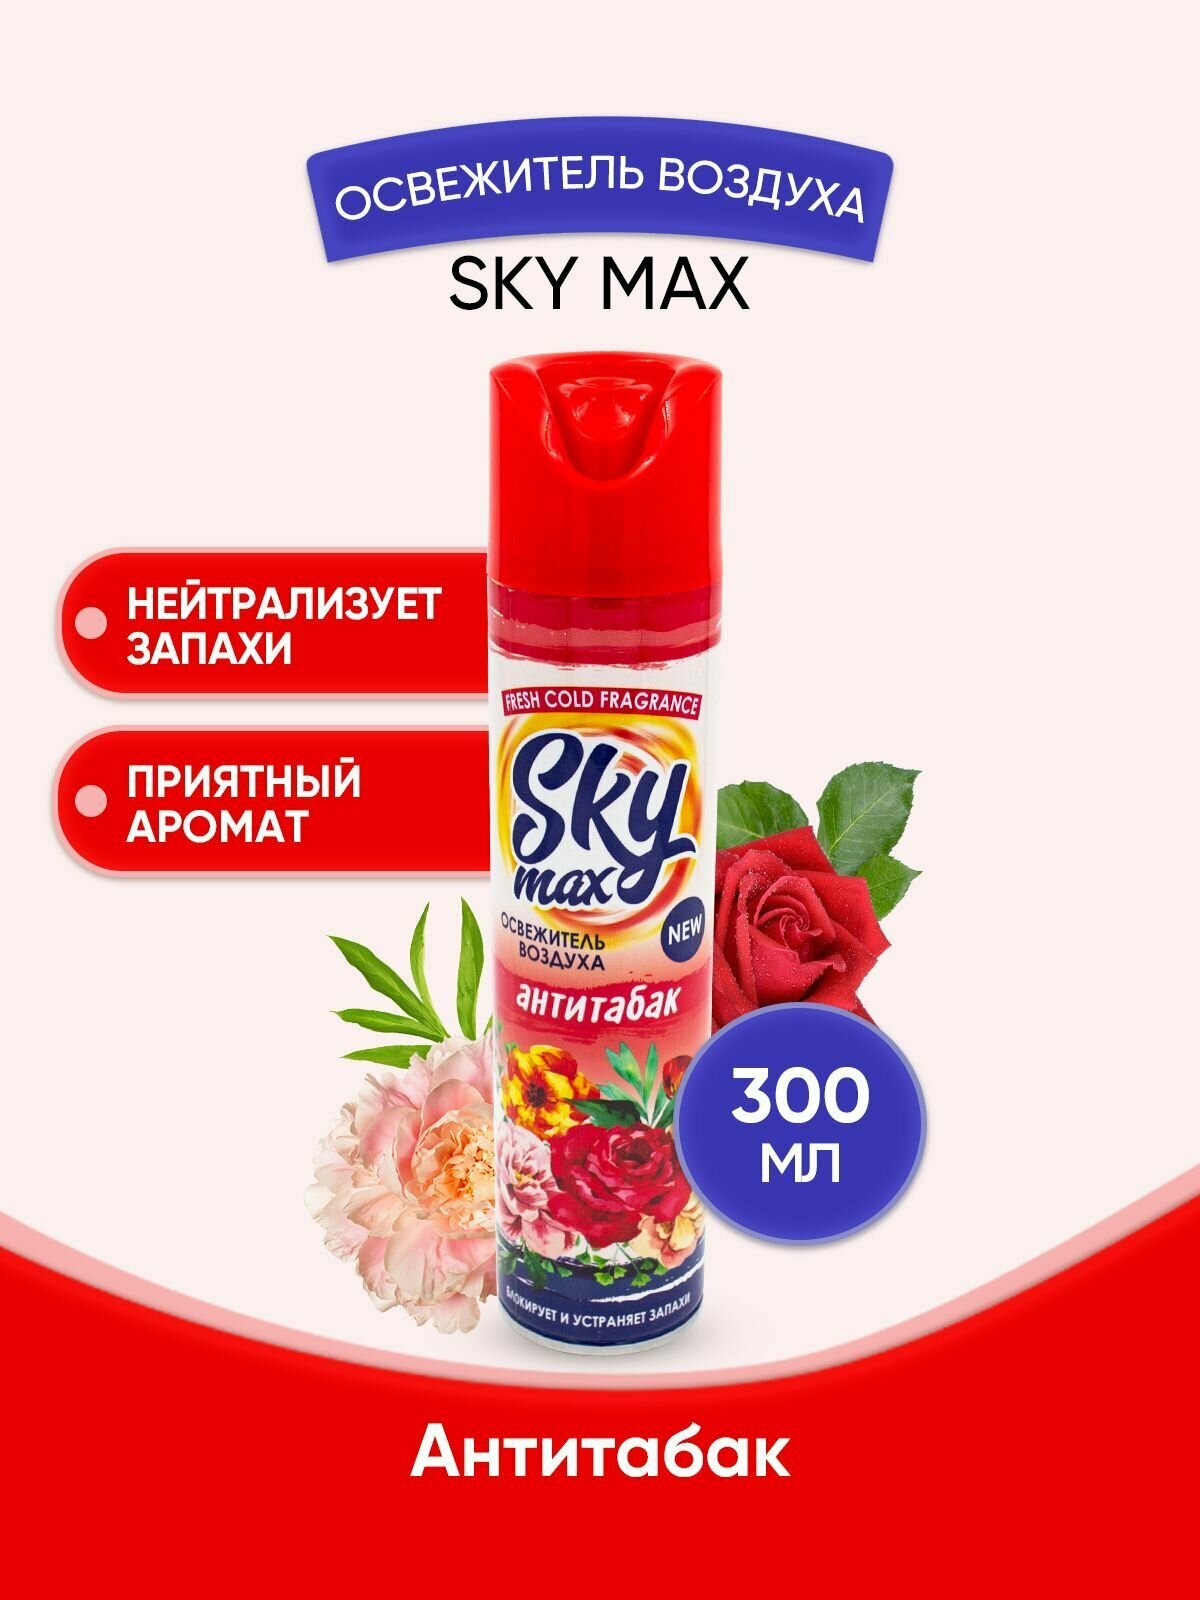 SKY MAX Освежитель воздуха Анититабак 300мл/1шт